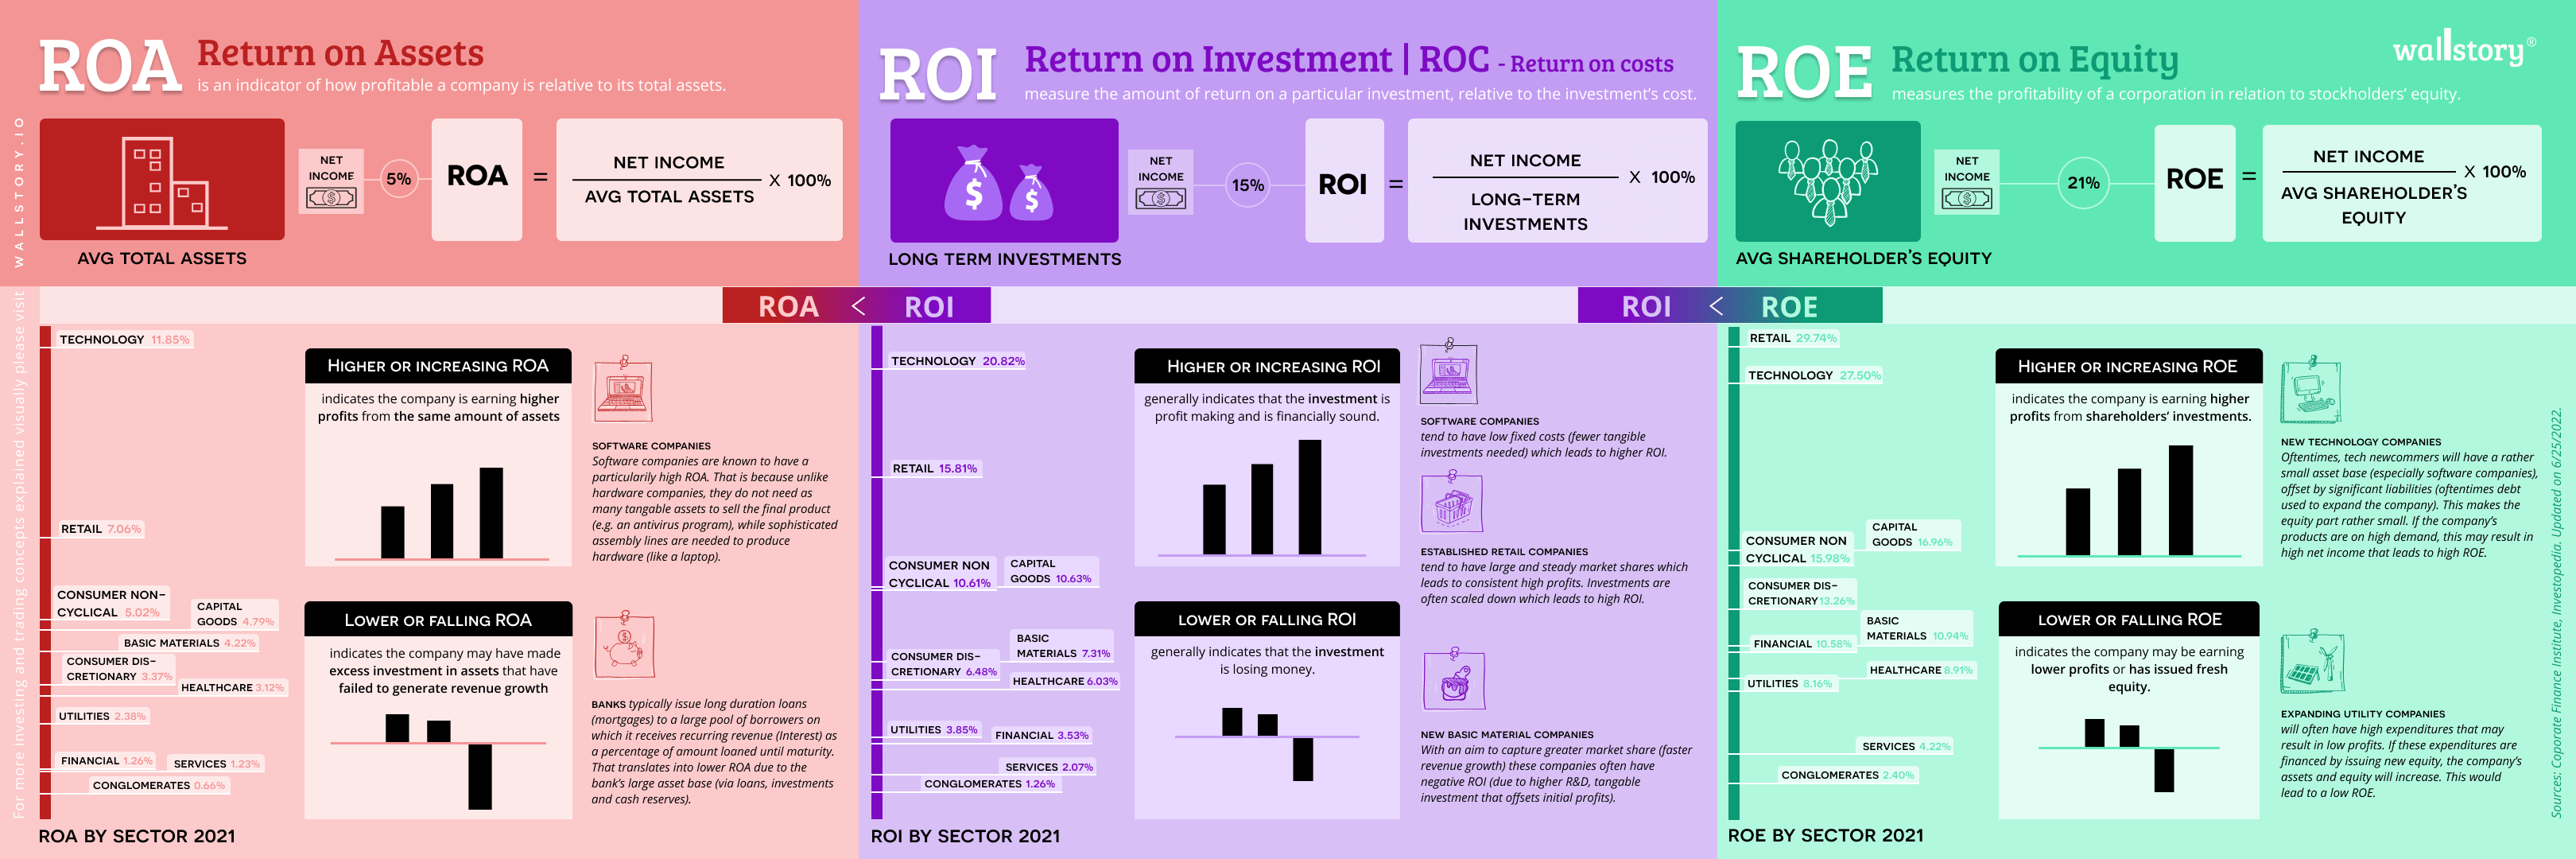 ROI (Return on Investment)